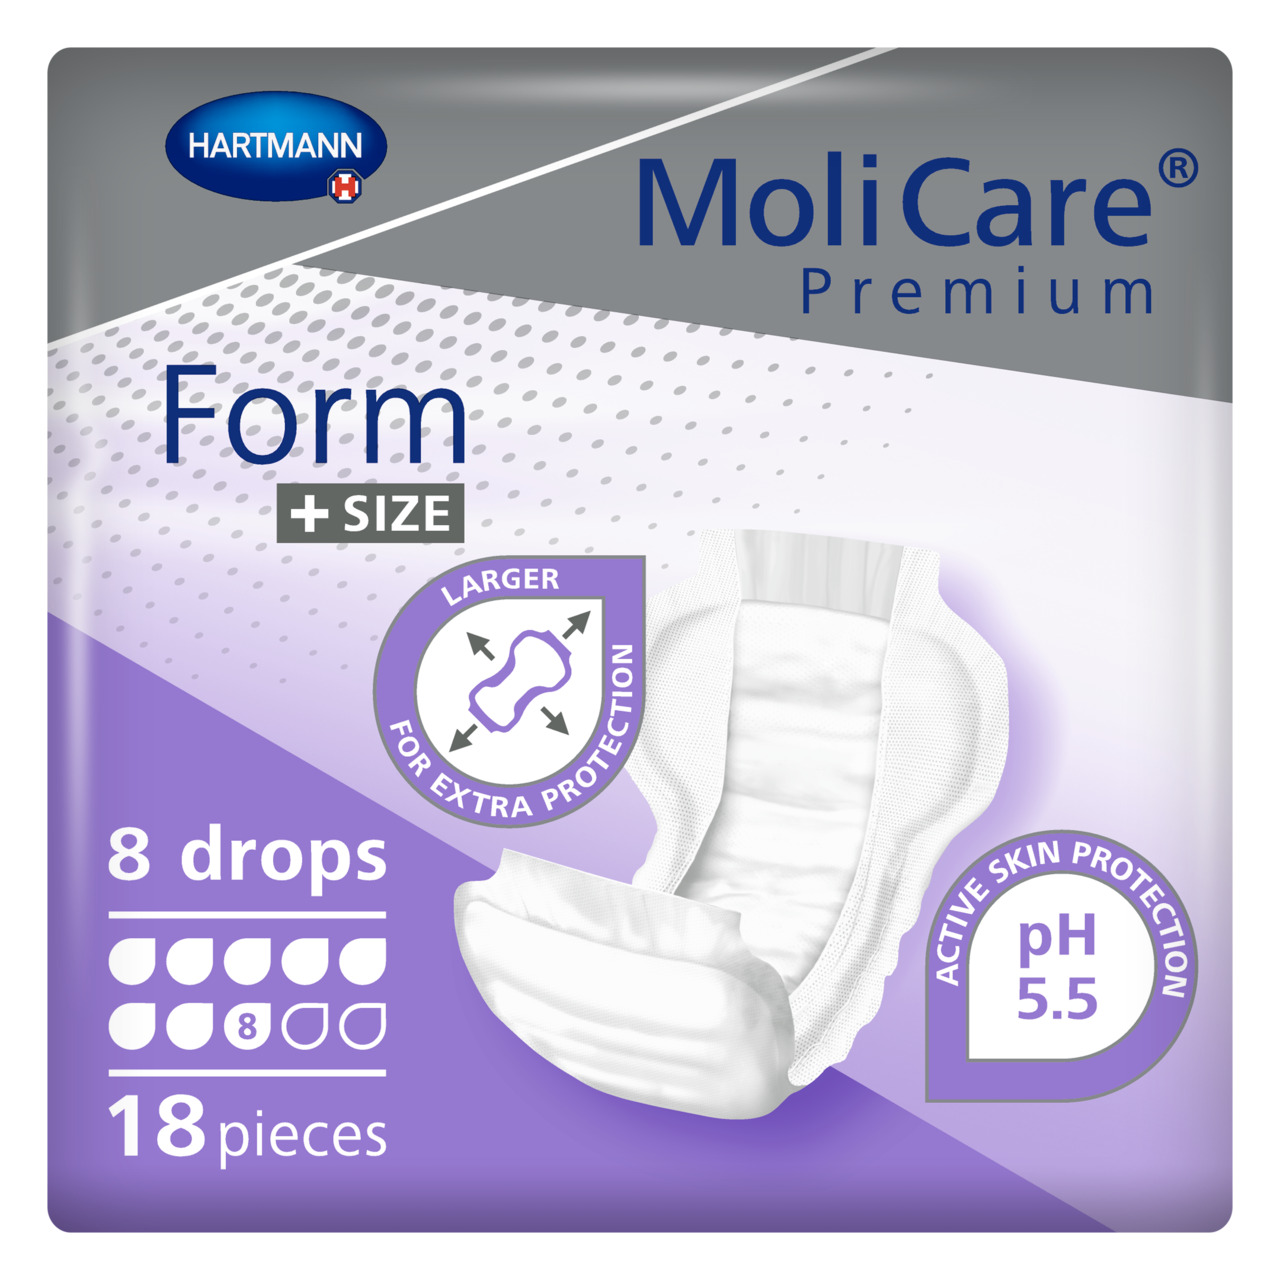 MoliCare® Premium Form Bariatric